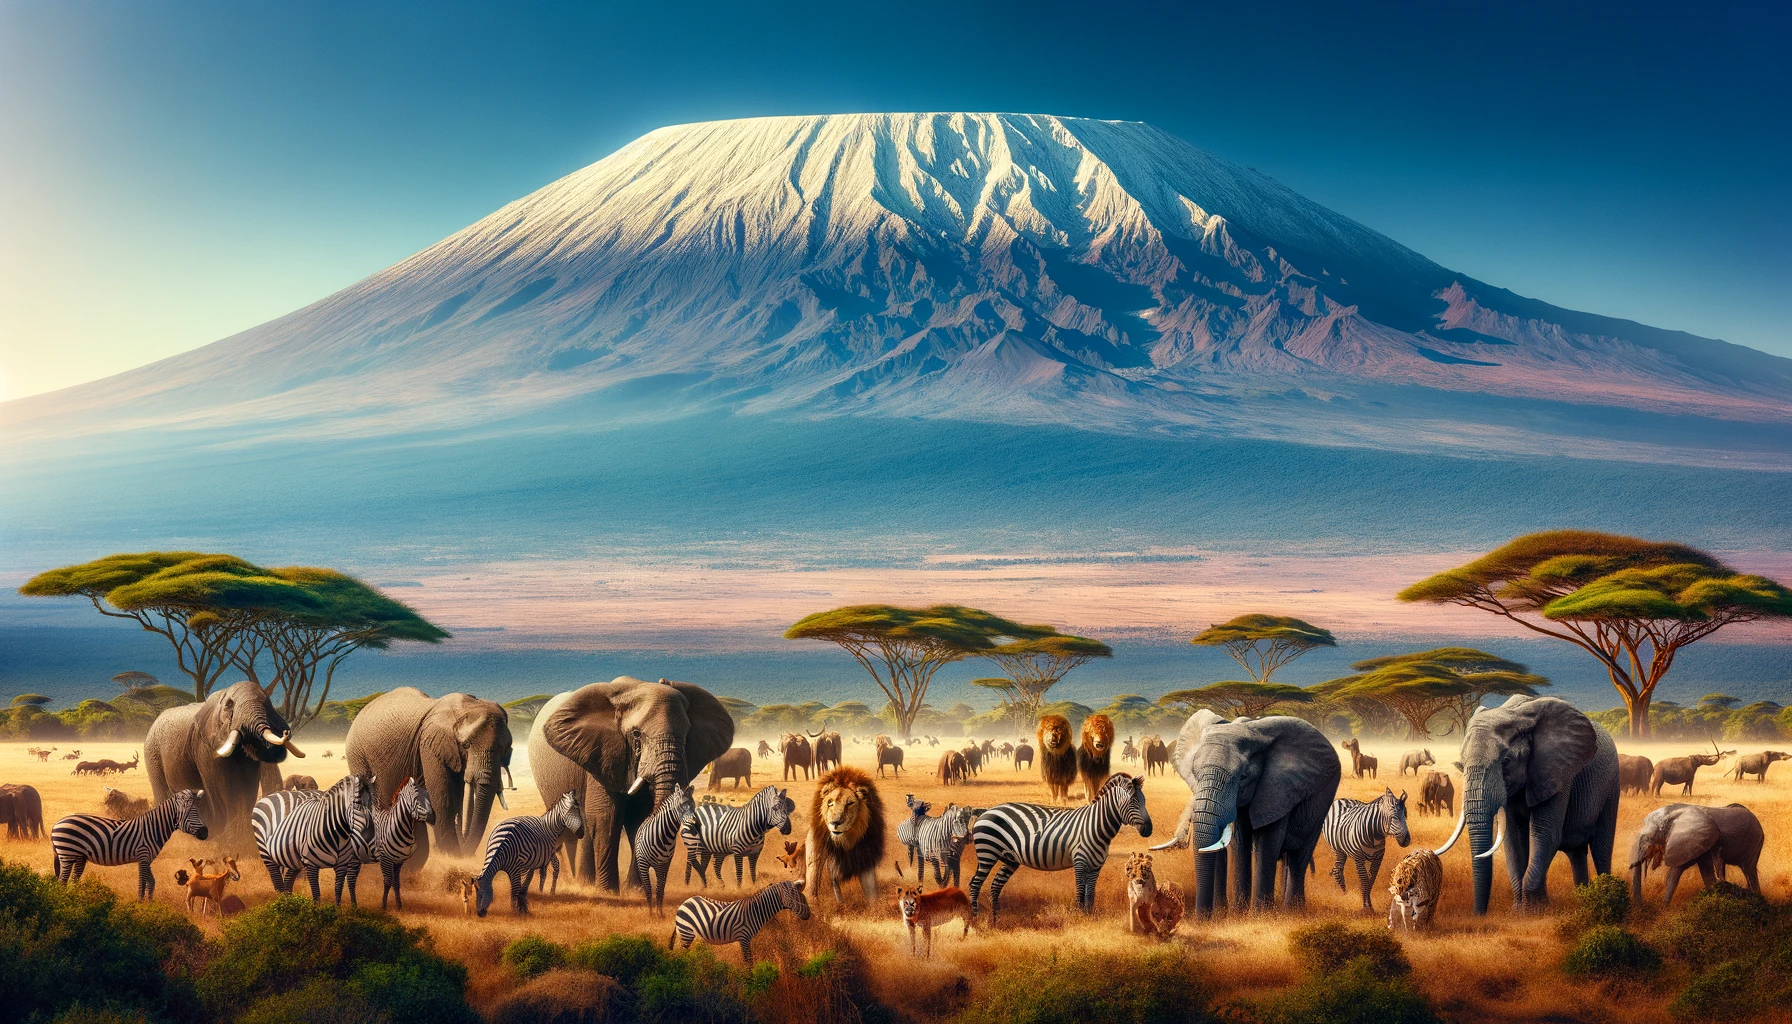 Kilimanjaro climb and safari packages